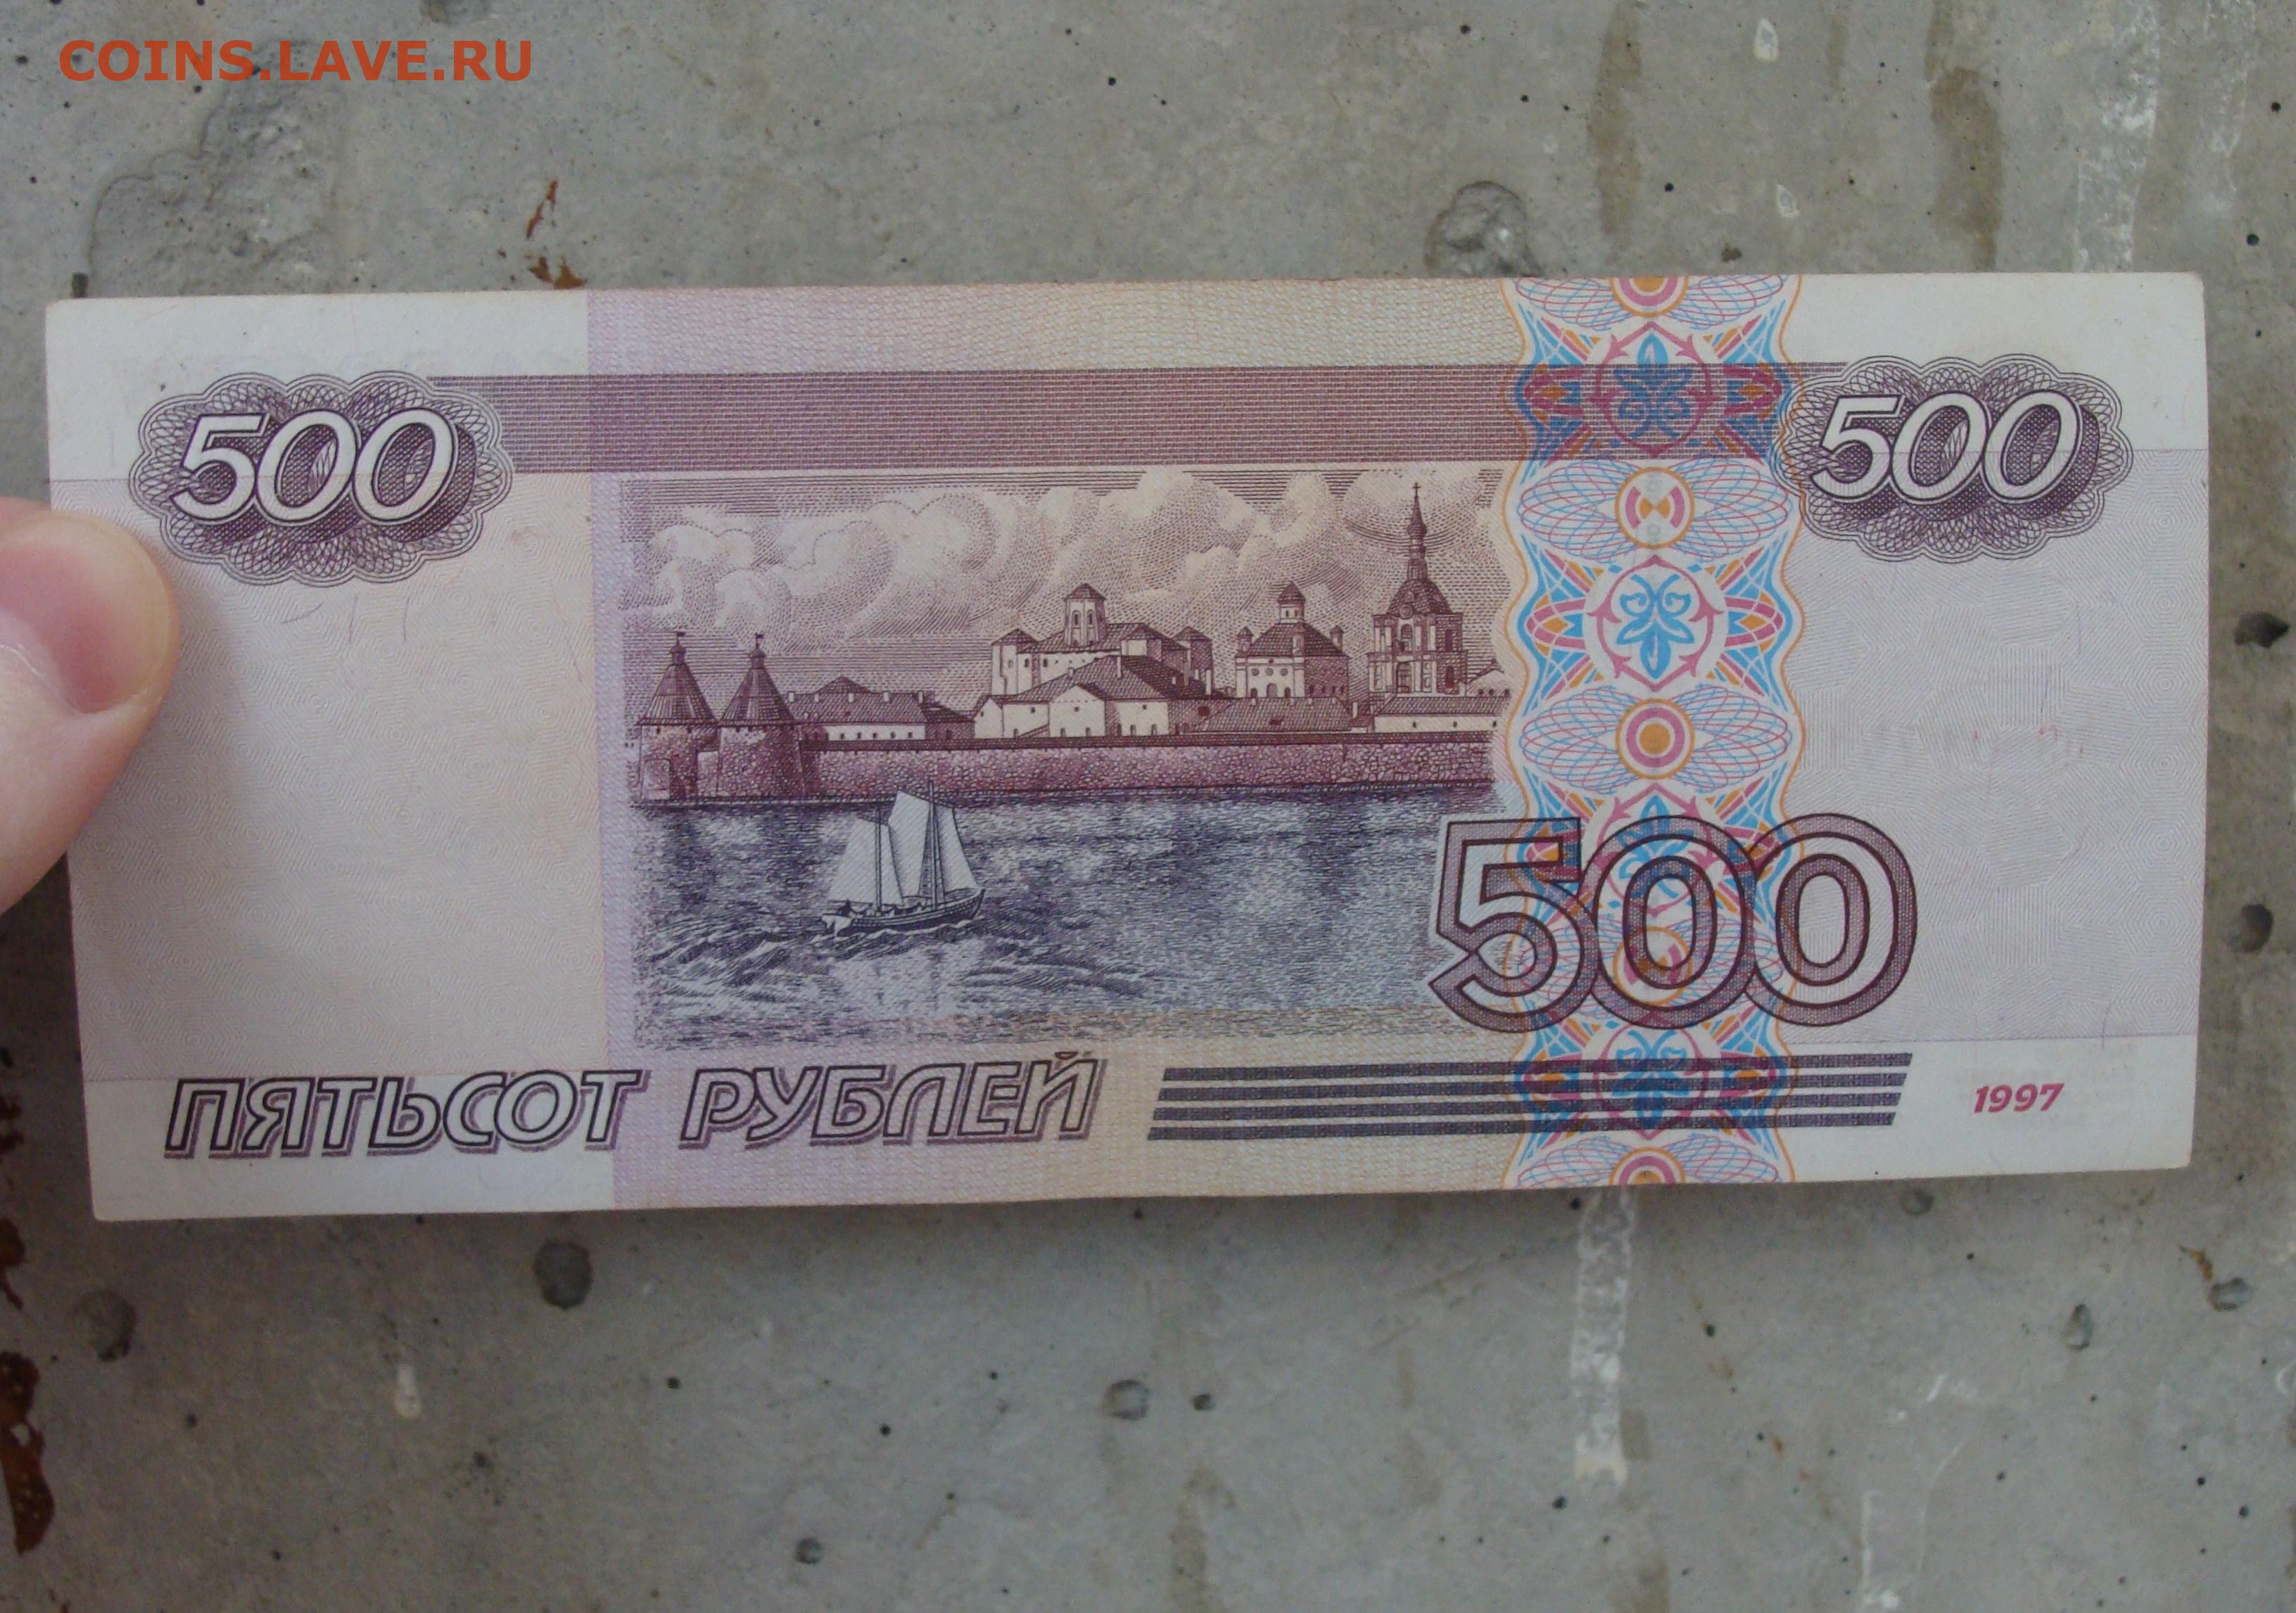 350 российских рублей. 500 Рублей России. 500 Рублей 2001 года модификации. 500 Р модификация 2001. 500 Российских рублей.